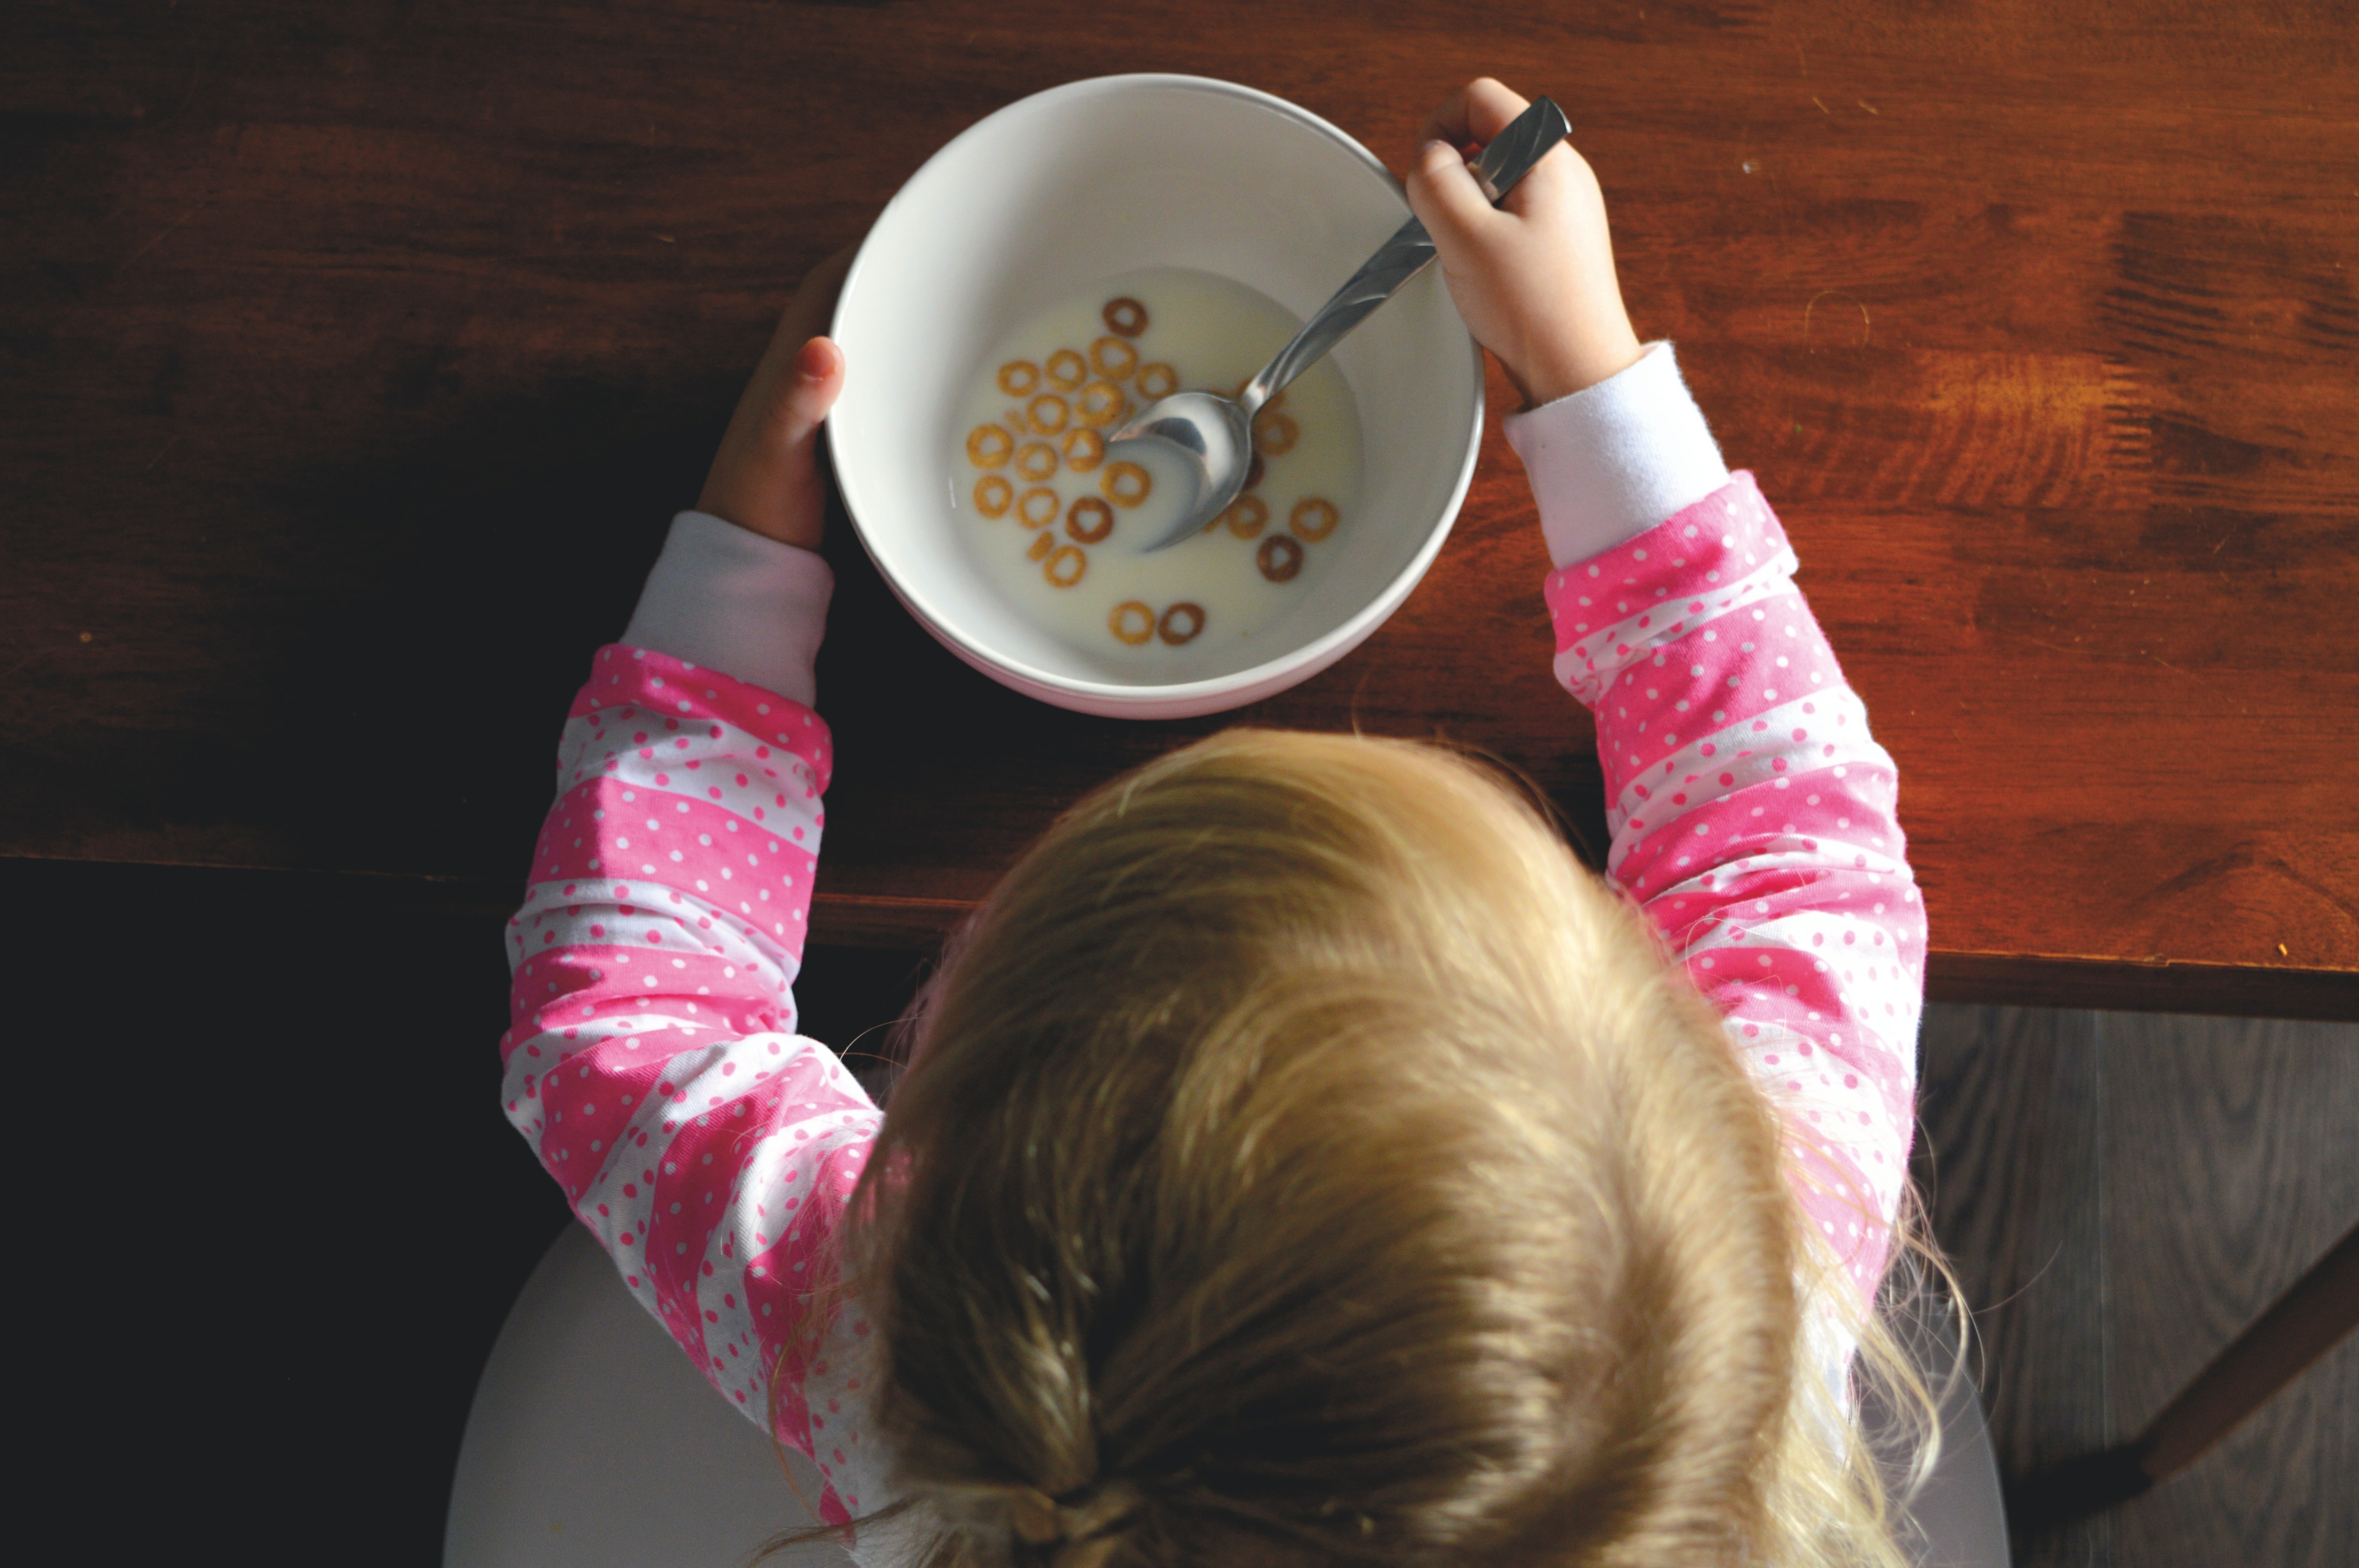 Crianças podem estar mais expostas à toxicidade de aditivos alimentares (Foto: Providence Doucet/Unsplash)